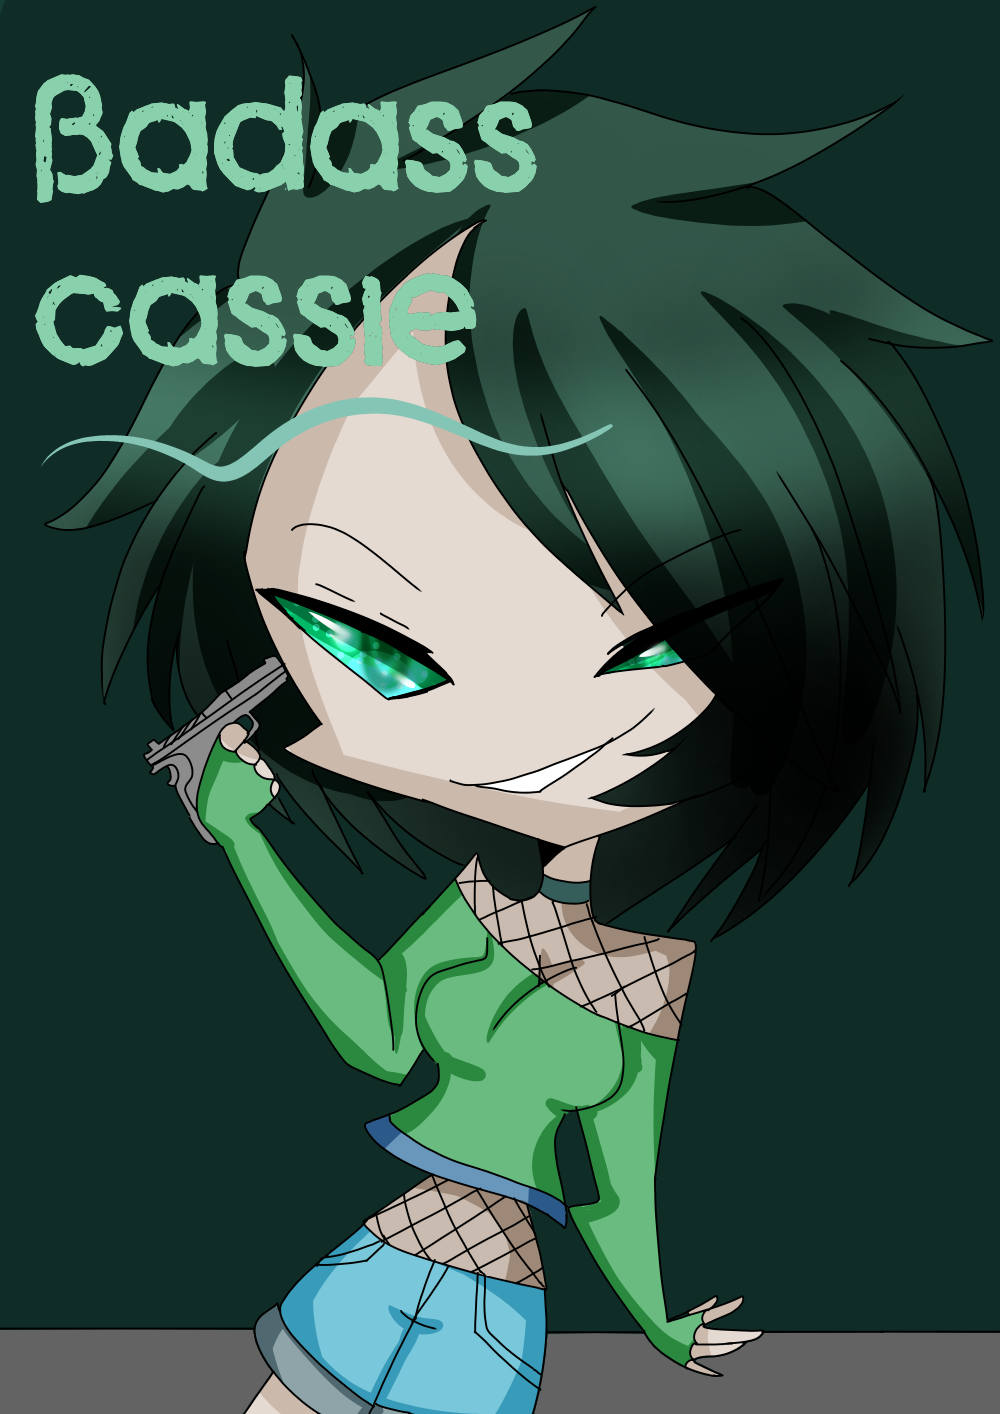 Cassie badass cass